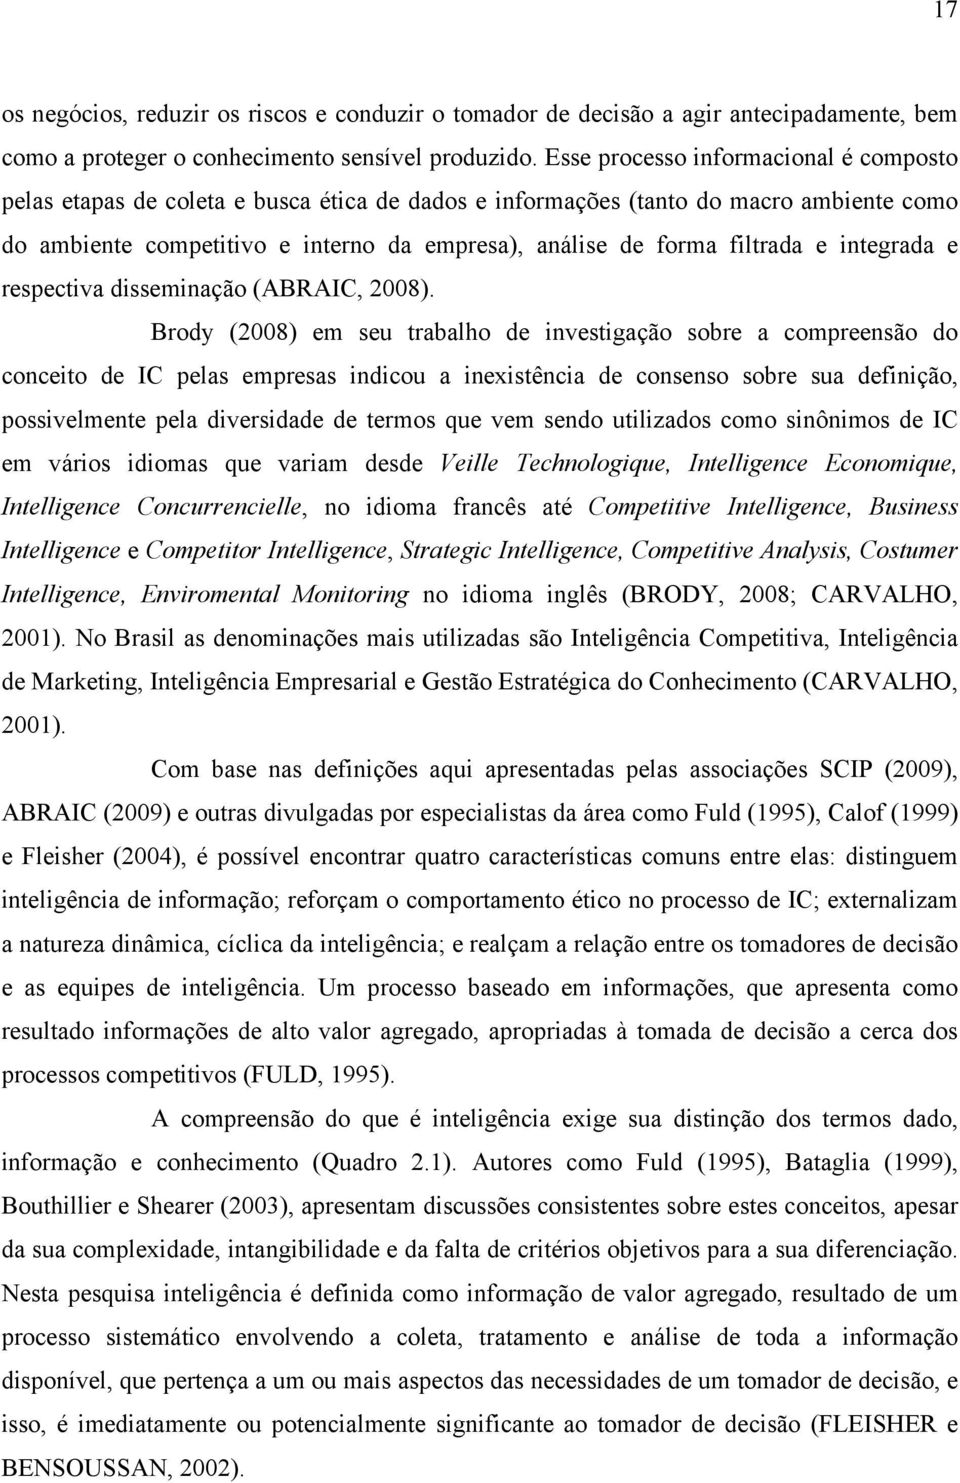 filtrada e integrada e respectiva disseminação (ABRAIC, 2008).